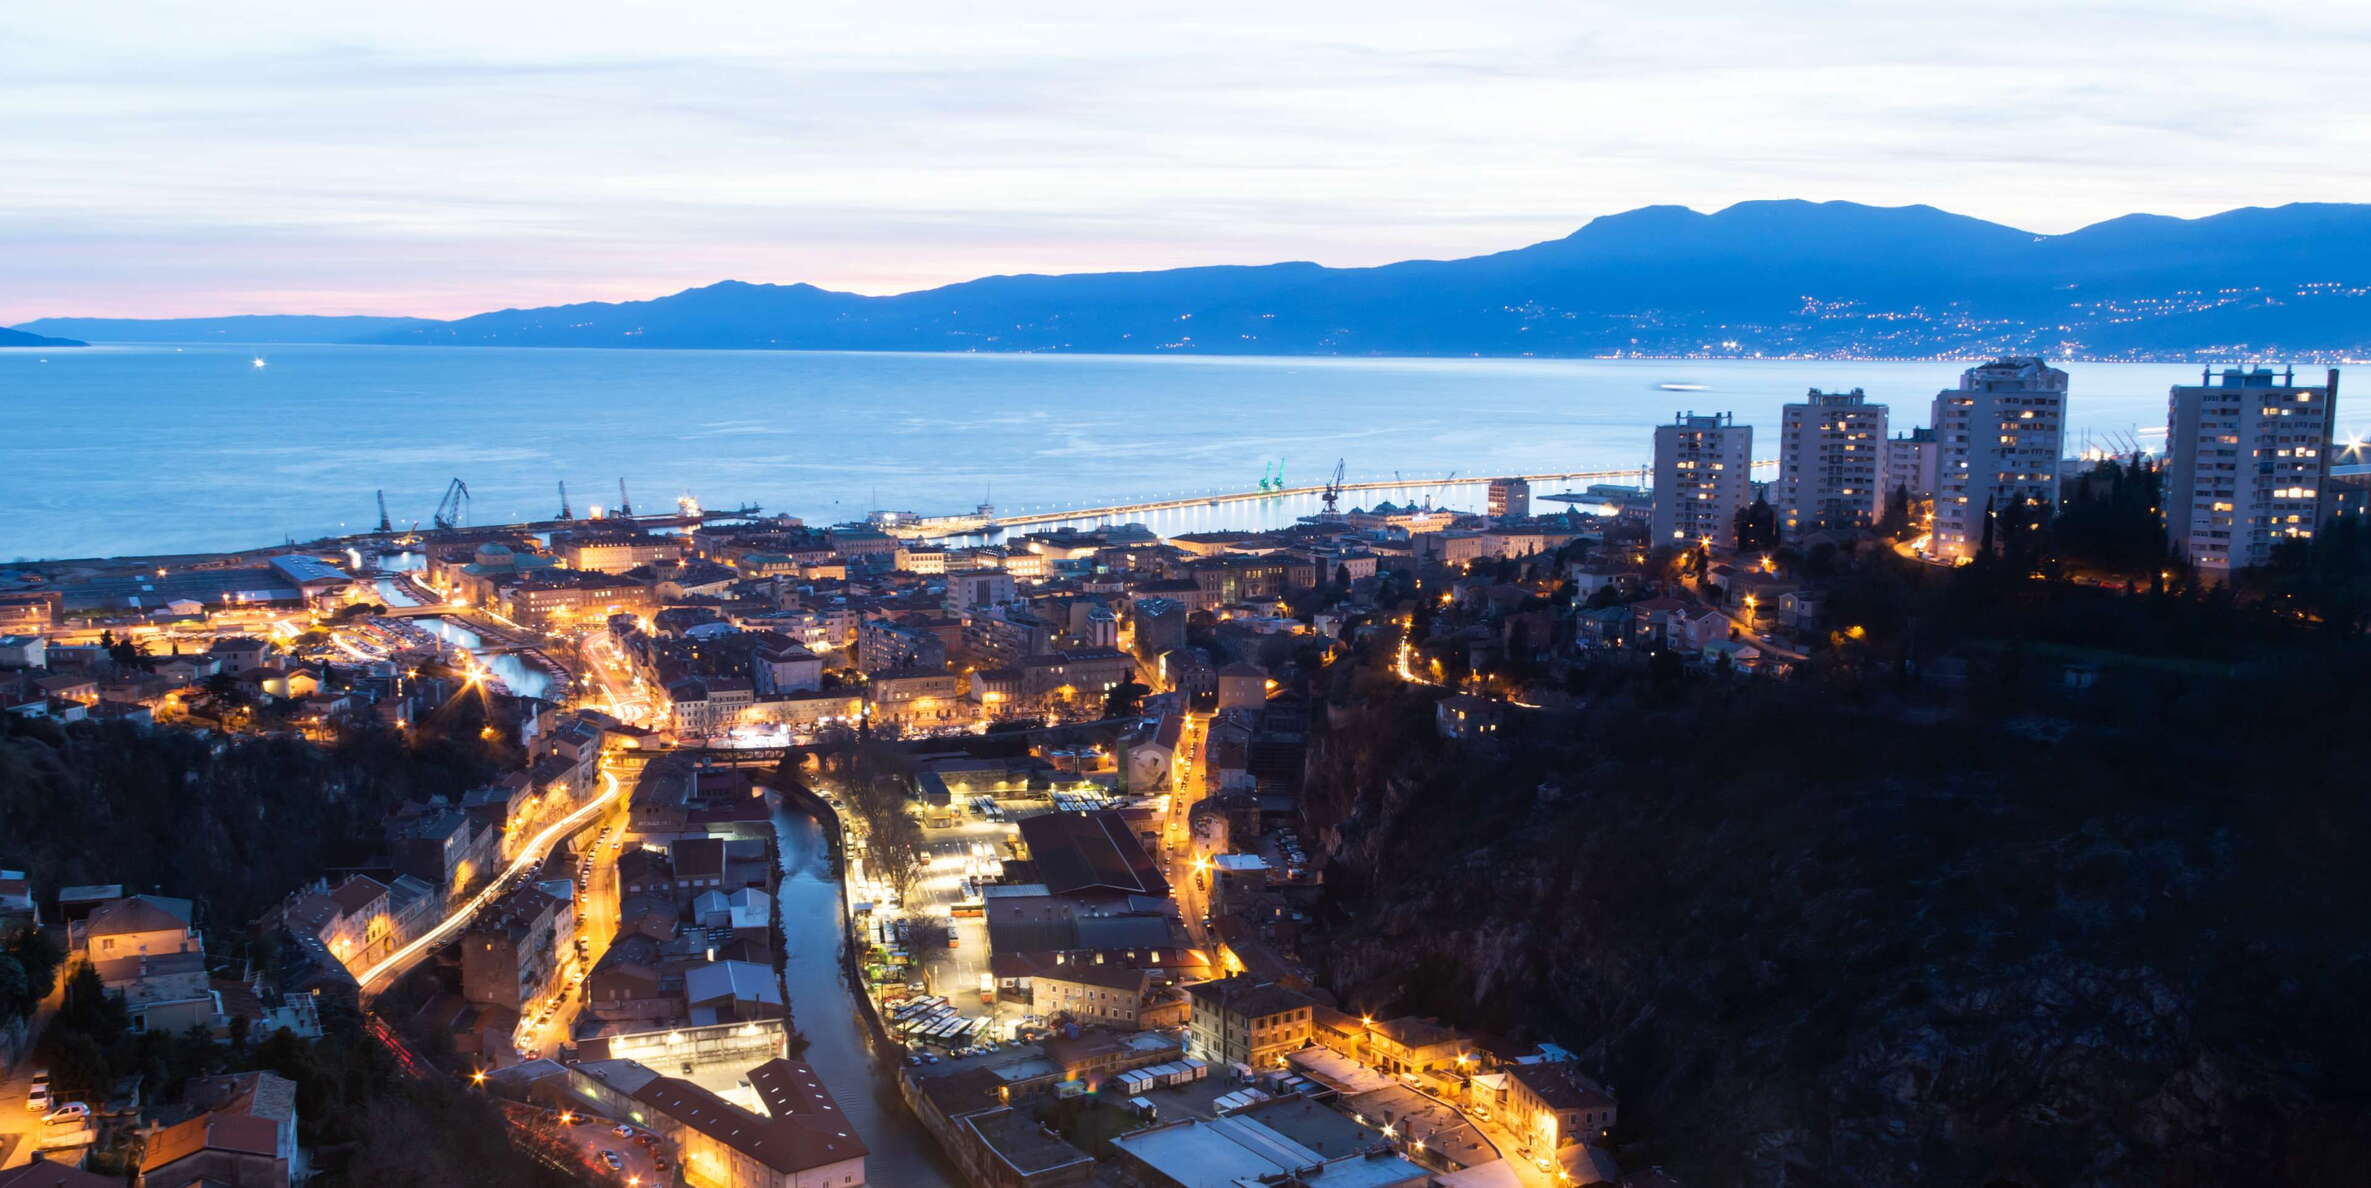 Rijeka | City centre and Kozala after sunset